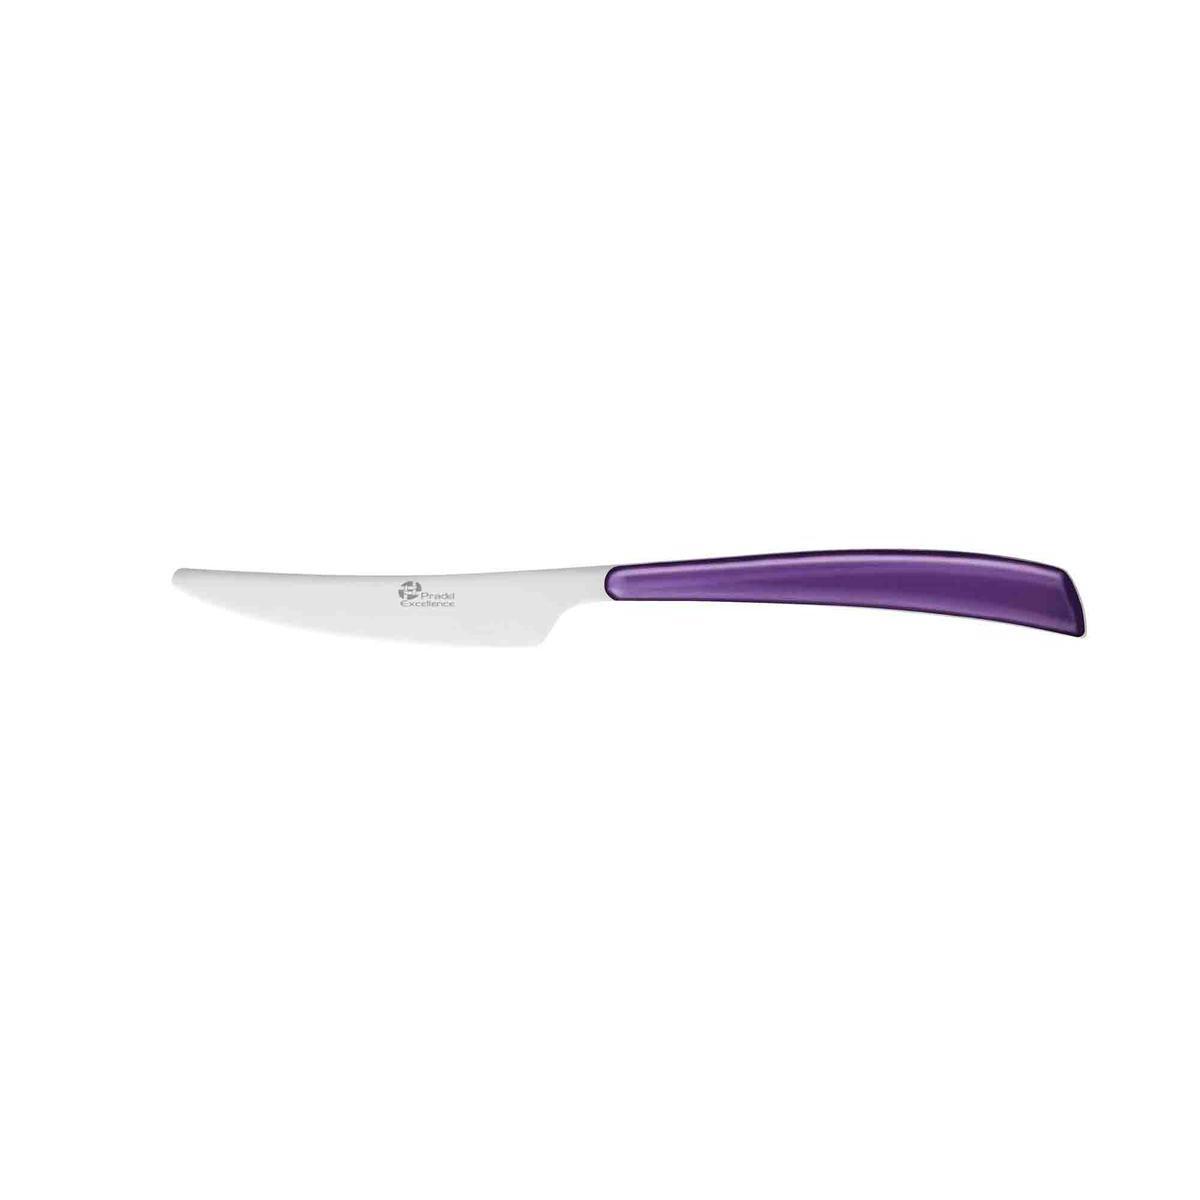 Couteau élégance mauve - Acier inoxydable - 23,4 cm -Violet